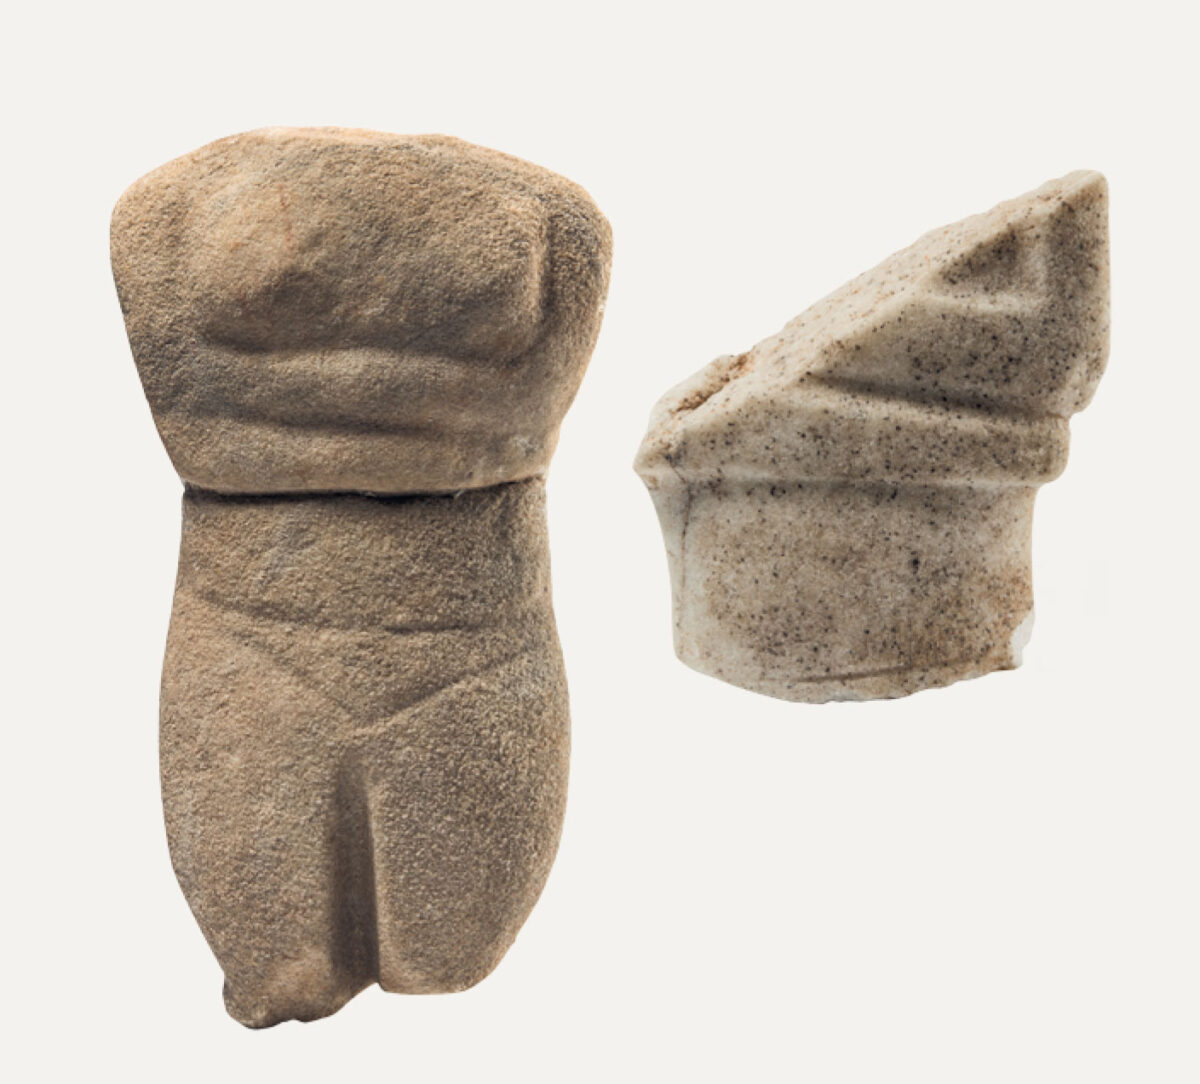 Τμήμα ειδωλίου παραλλαγής Σπεδού, 2800-2300 π.Χ. Μουσείο Κυκλαδικής Τέχνης.